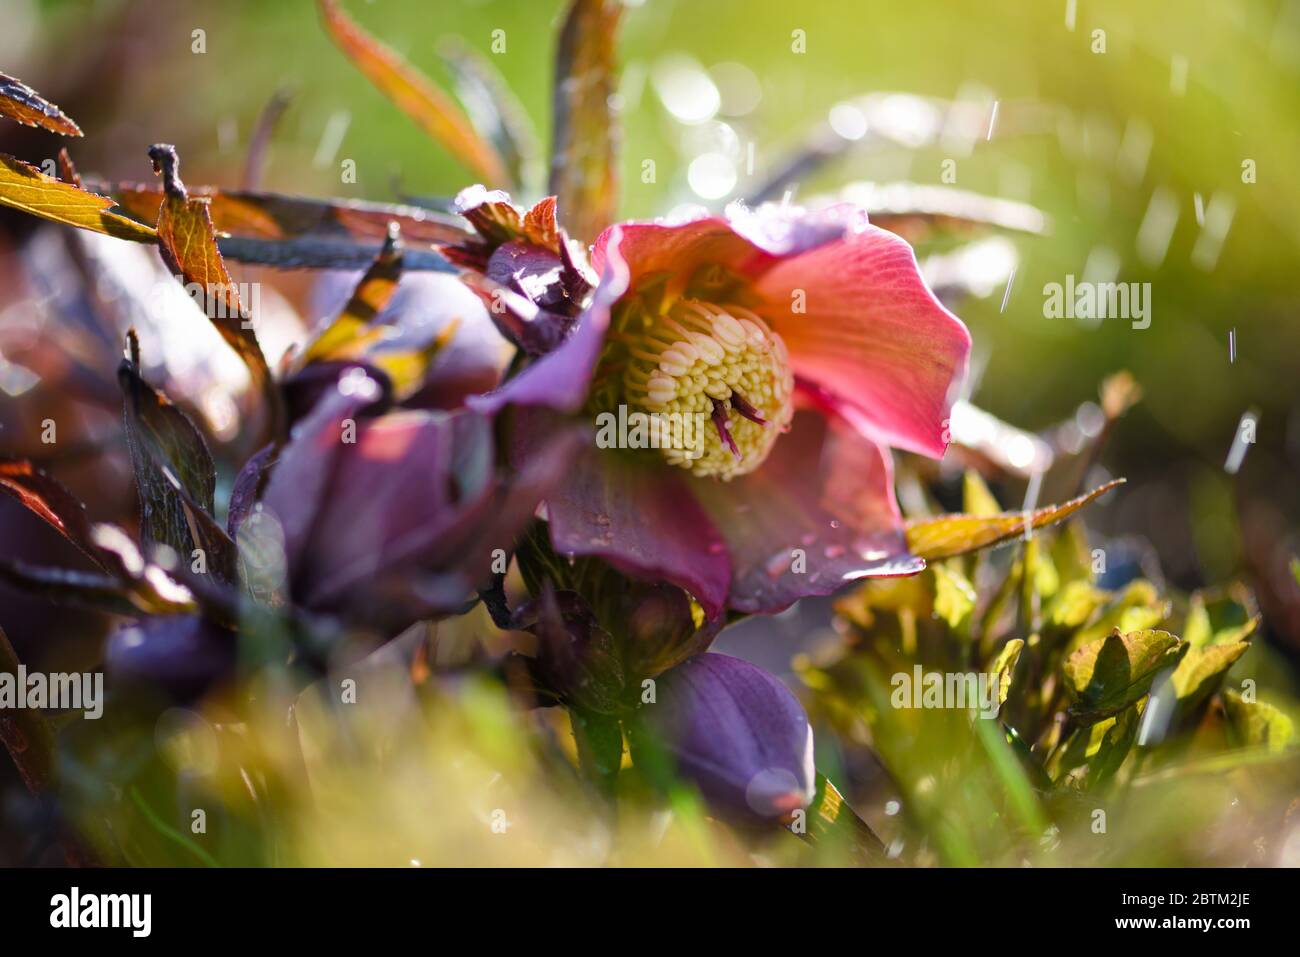 Magnifique Helleborus rose avec des gouttes de rosée, fleurs printanières dans le jardin Banque D'Images